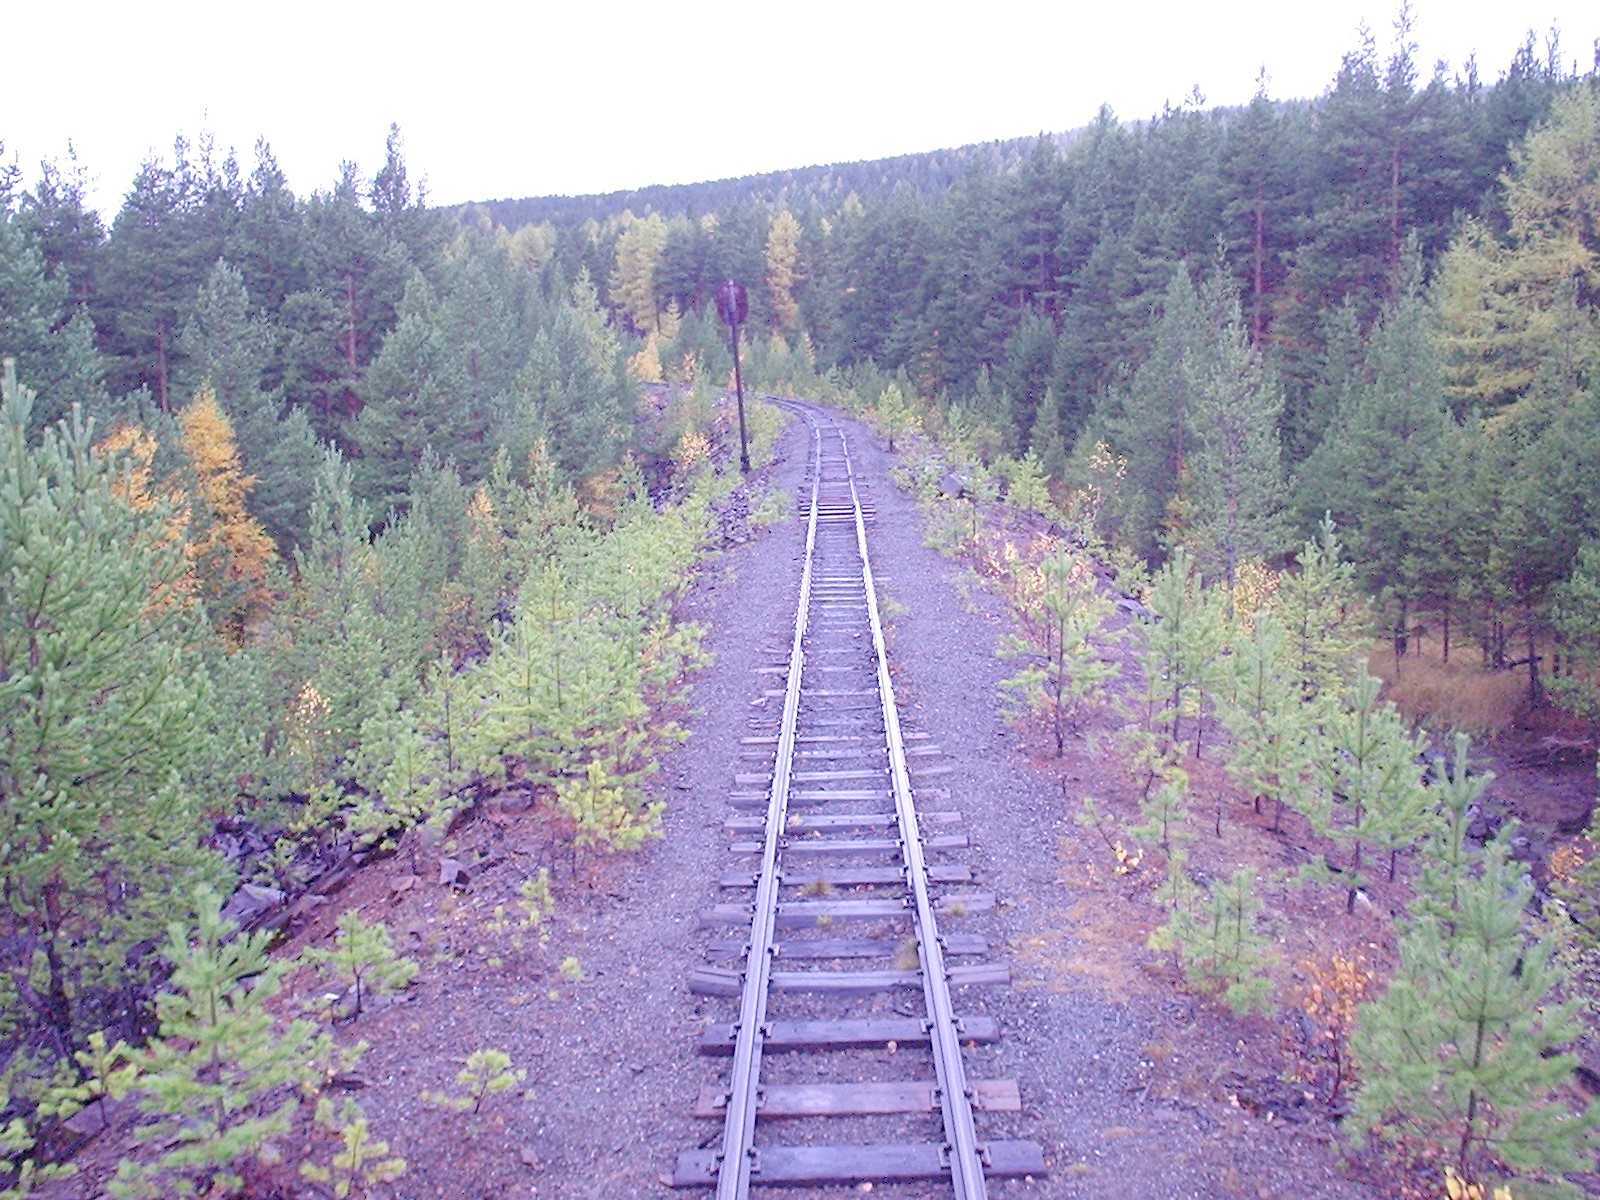 Висимо-Уткинская узкоколейная железная дорога  - фотографии, сделанные в 2006 году (часть 6)